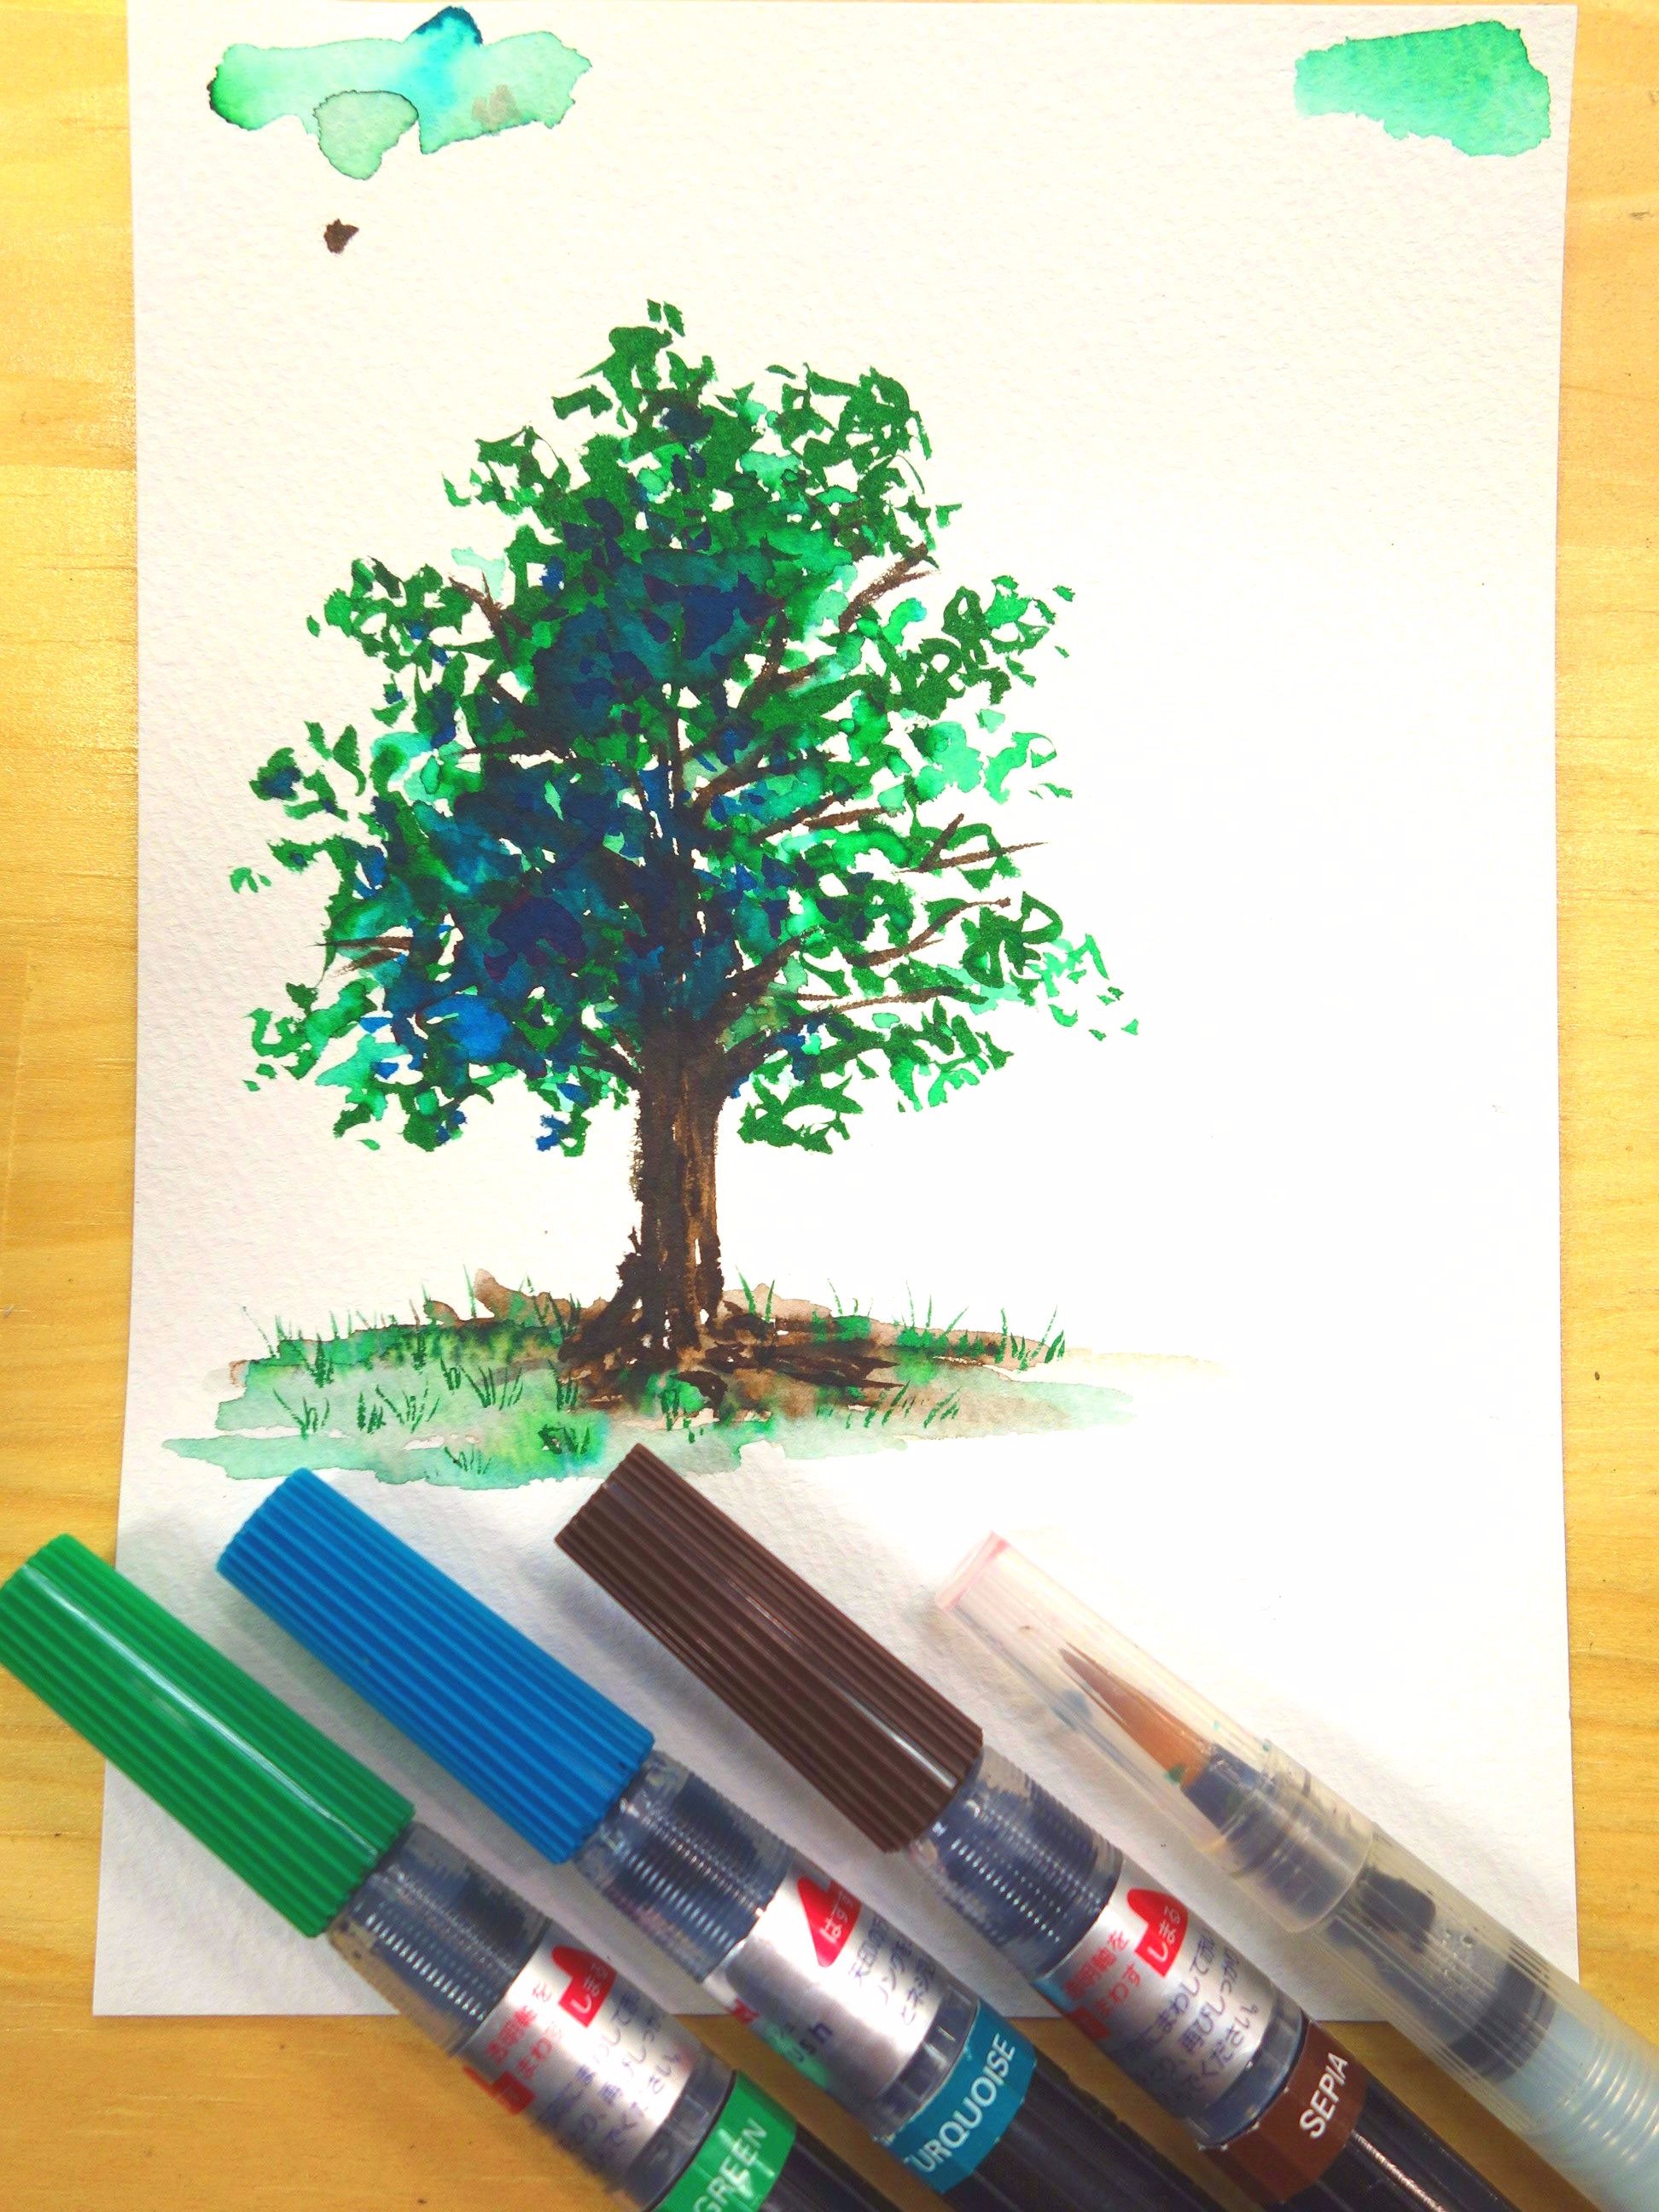 ユーアーツ ぺんてる アートブラッシュ でお手軽水彩イラスト 筆ペンタイプでパレット不要 水筆でぼかしも簡単 グリーン ターコイズ セピアの３色で木を描いてみました 全18色 １本 540円 手軽でとっても楽しいのでぜひ試してみてね お求め